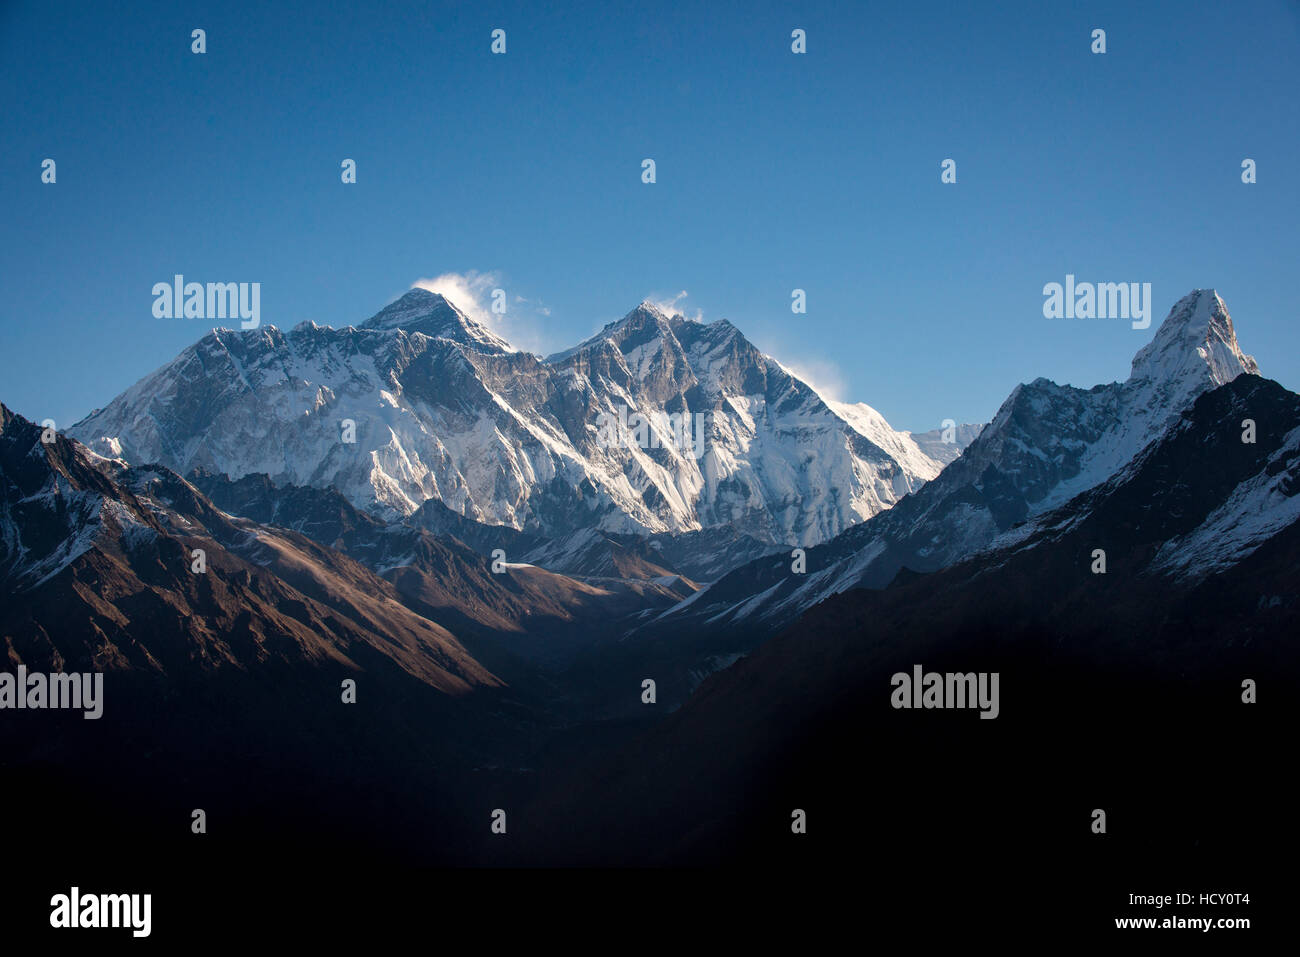 Una vista del monte Everest, distante da picco a sinistra dietro il crinale Nuptse-Lhotse, da Kongde, Regione di Khumbu, in Nepal Foto Stock